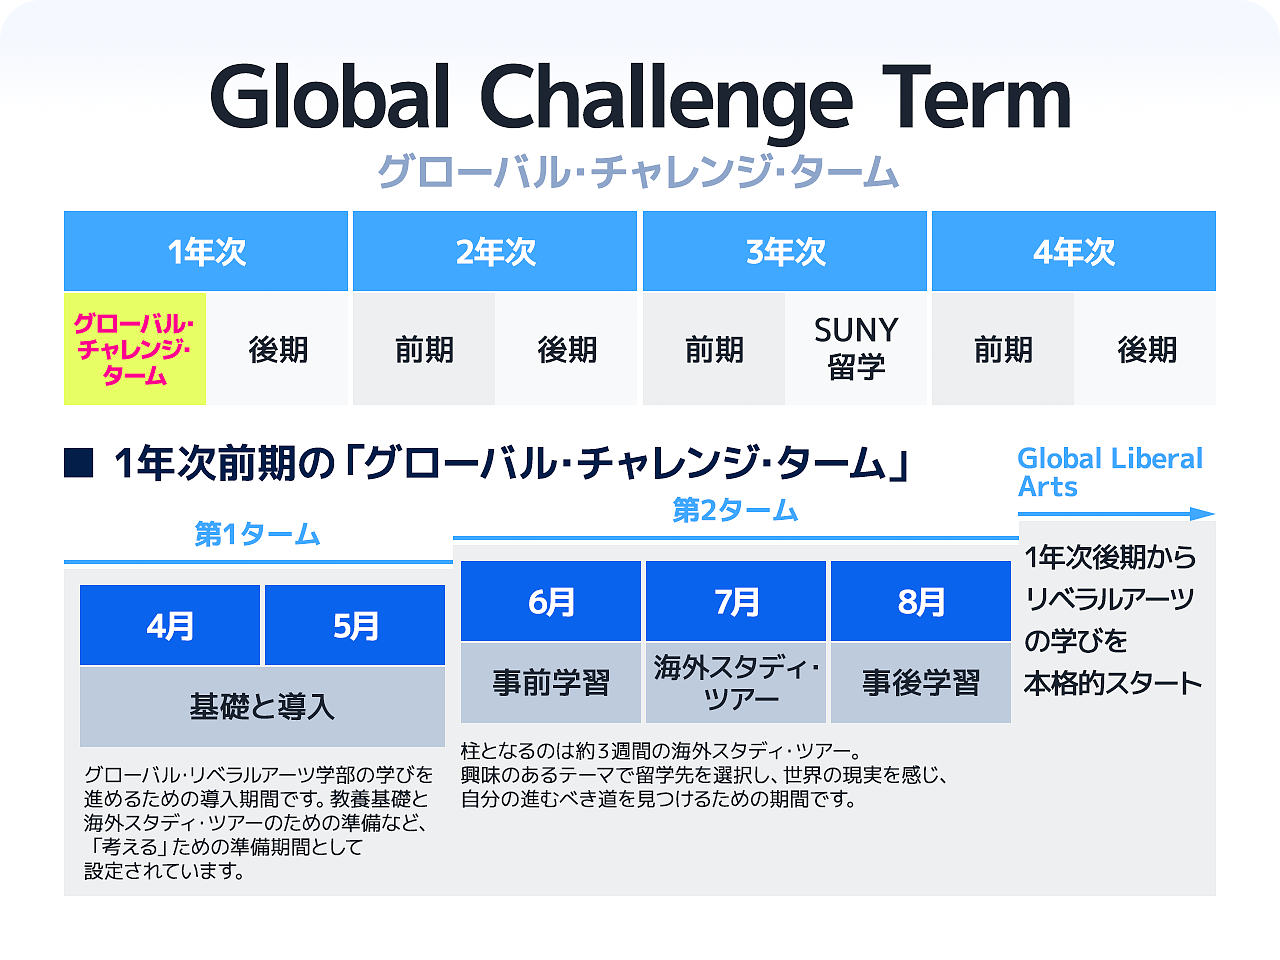 神田外語大学「グローバル・チャレンジ・ターム」を説明するイラスト画像